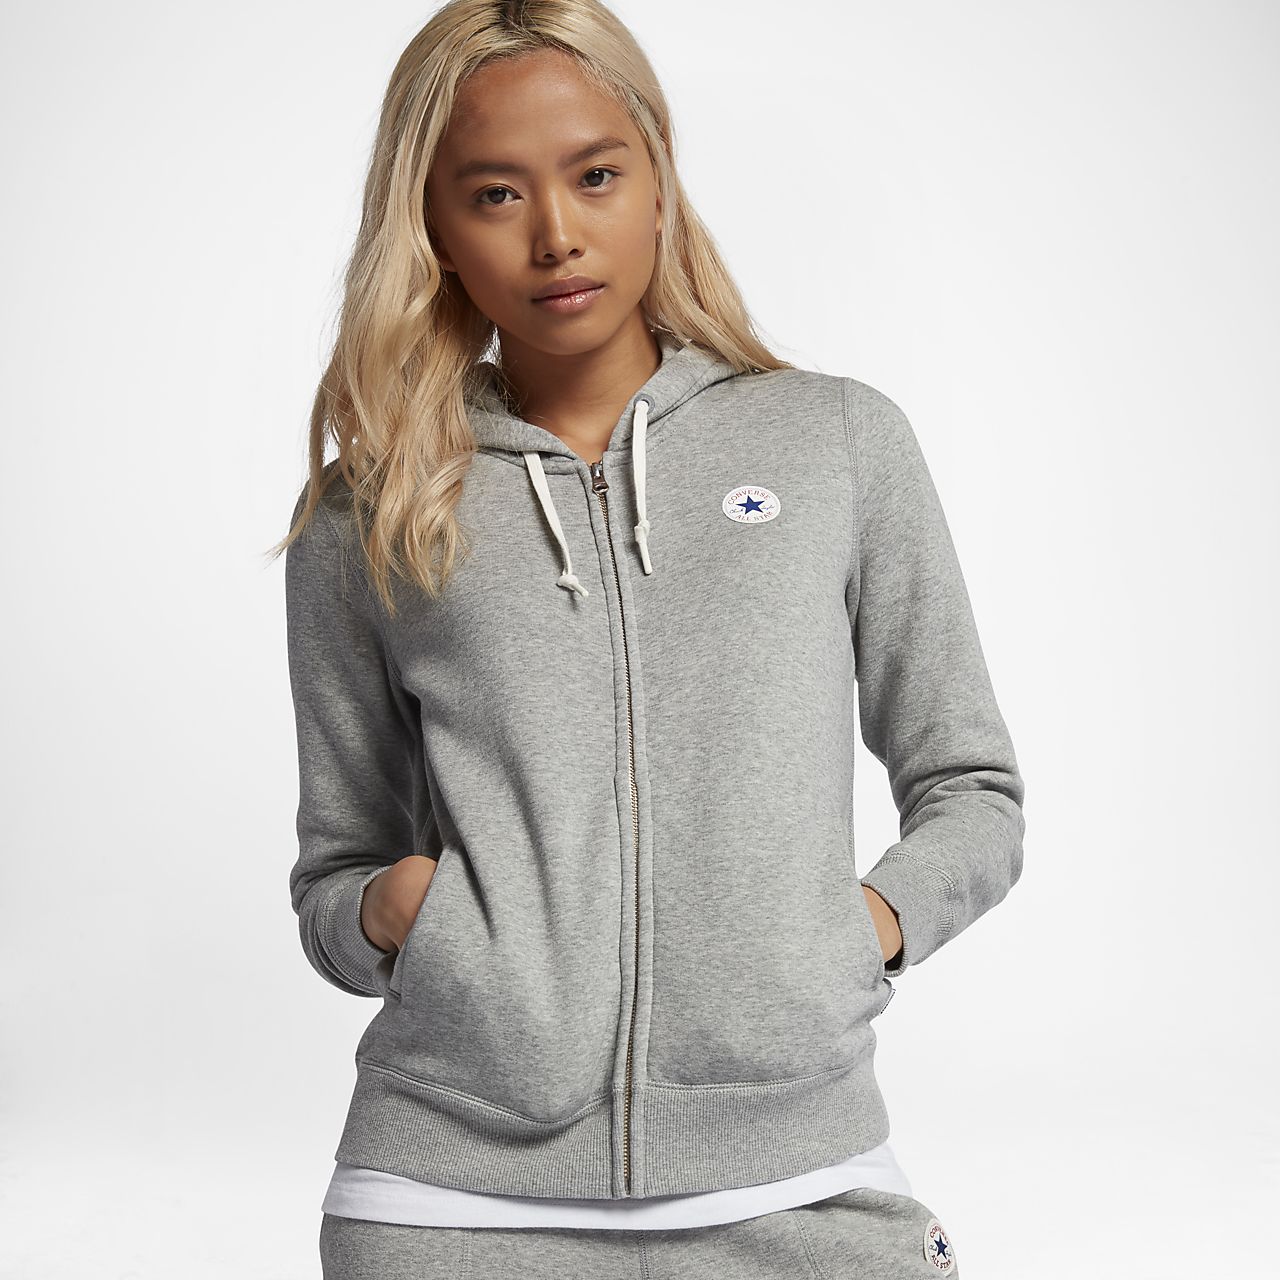 converse womens hoodie